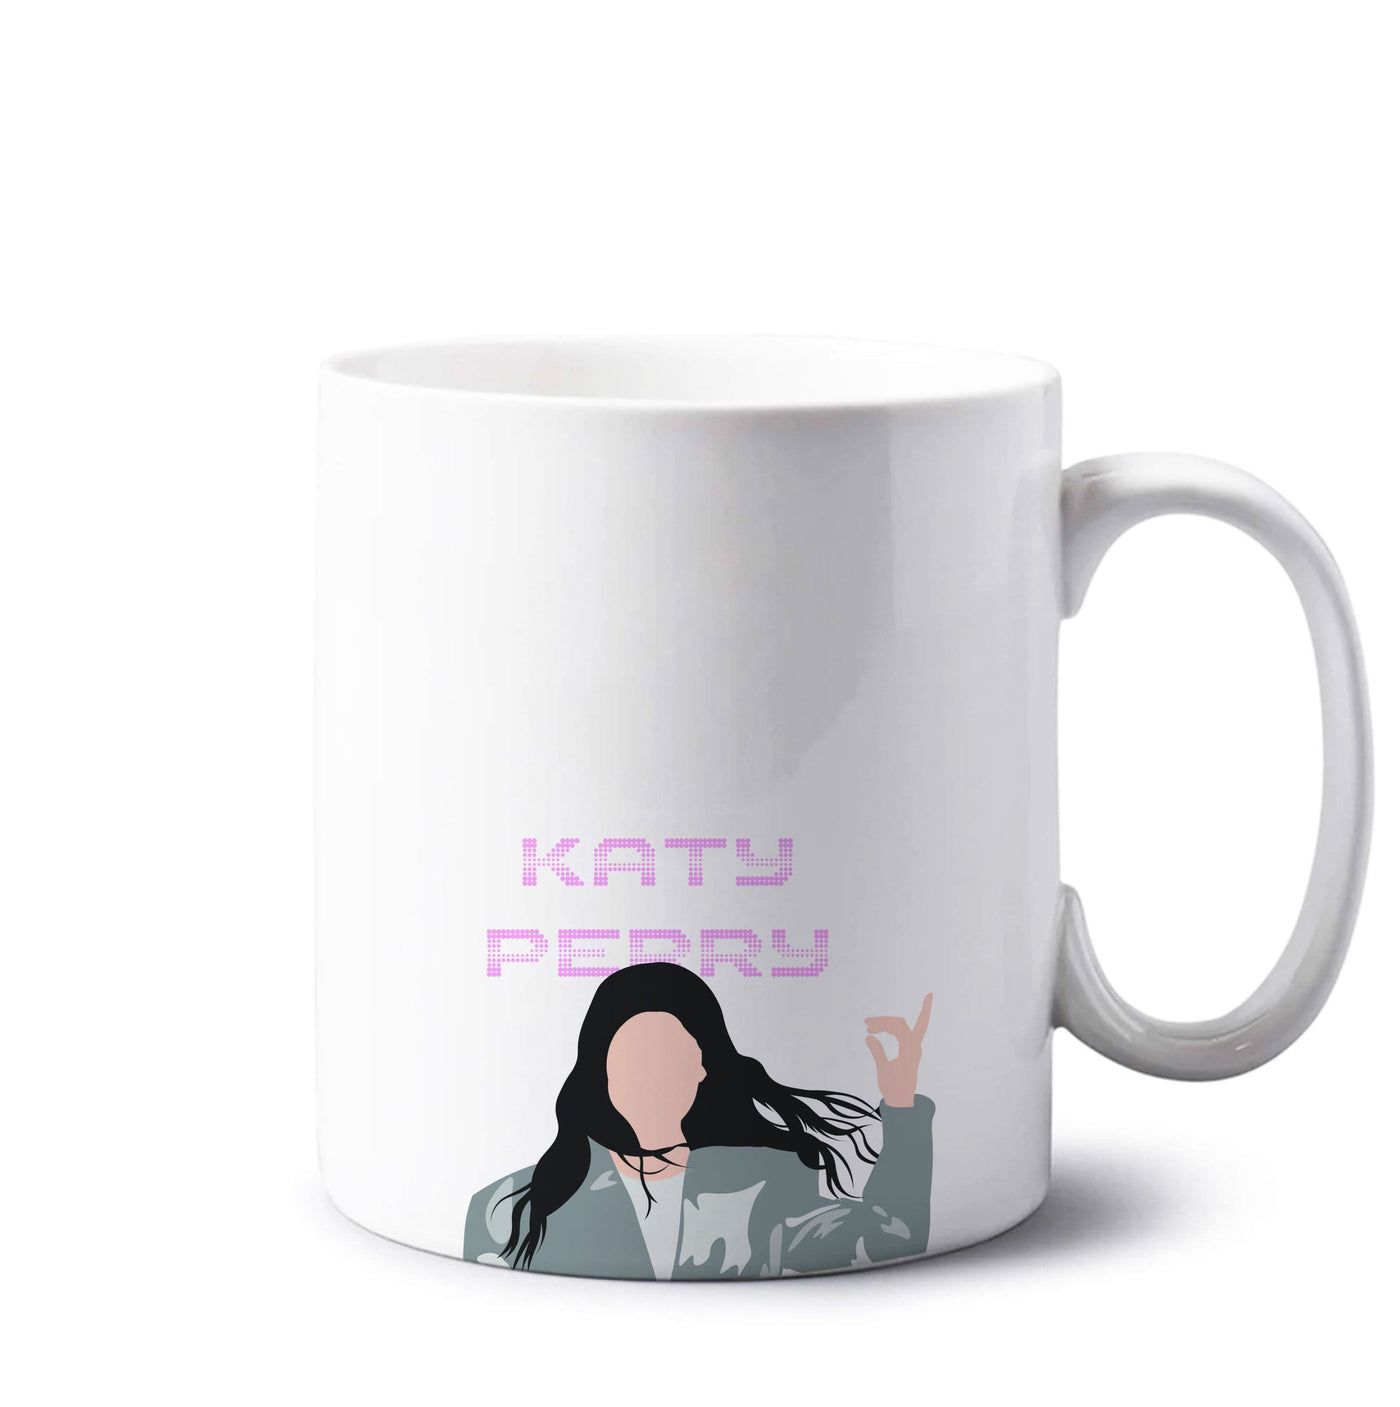 Sign - Katy Perry Mug